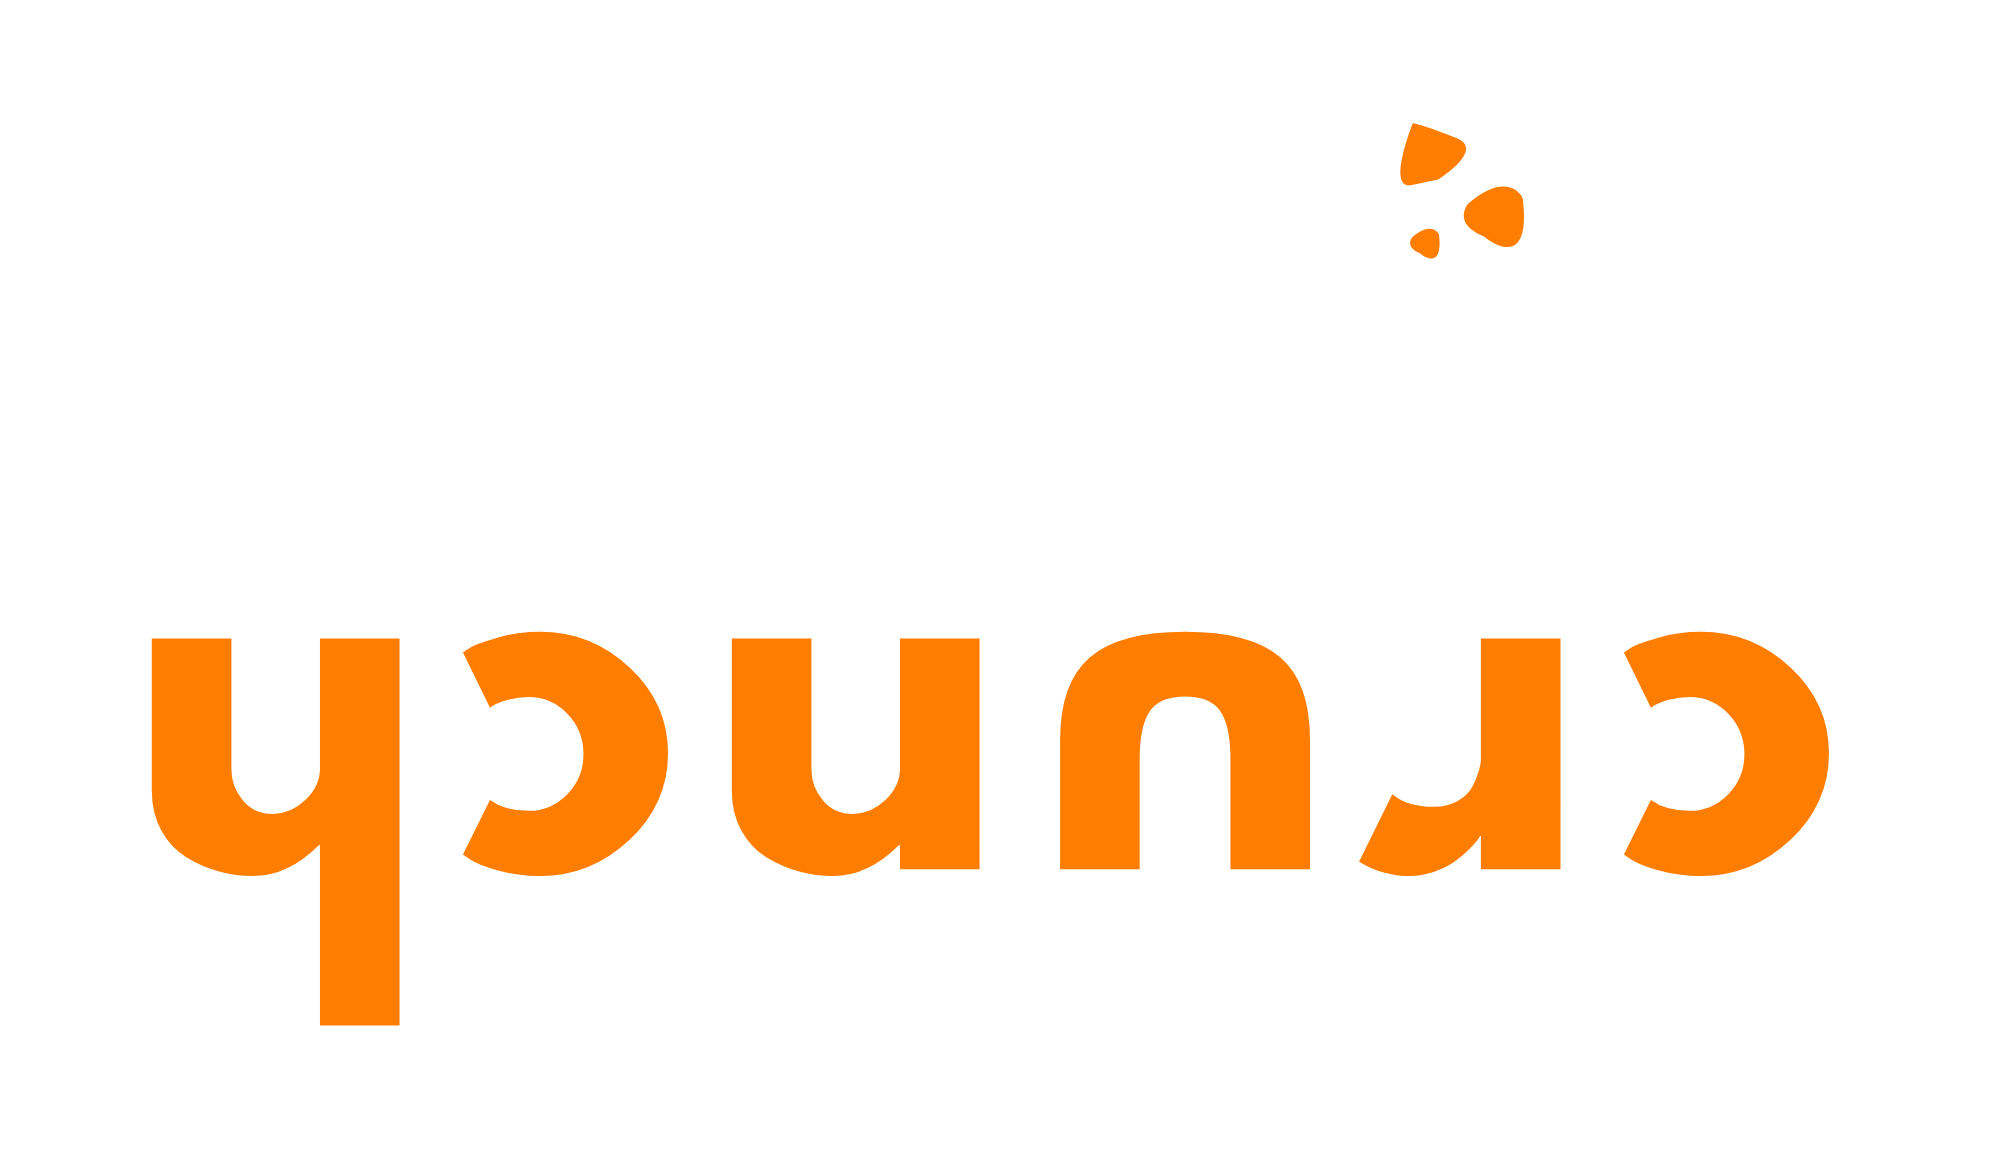 Cookiecrunch